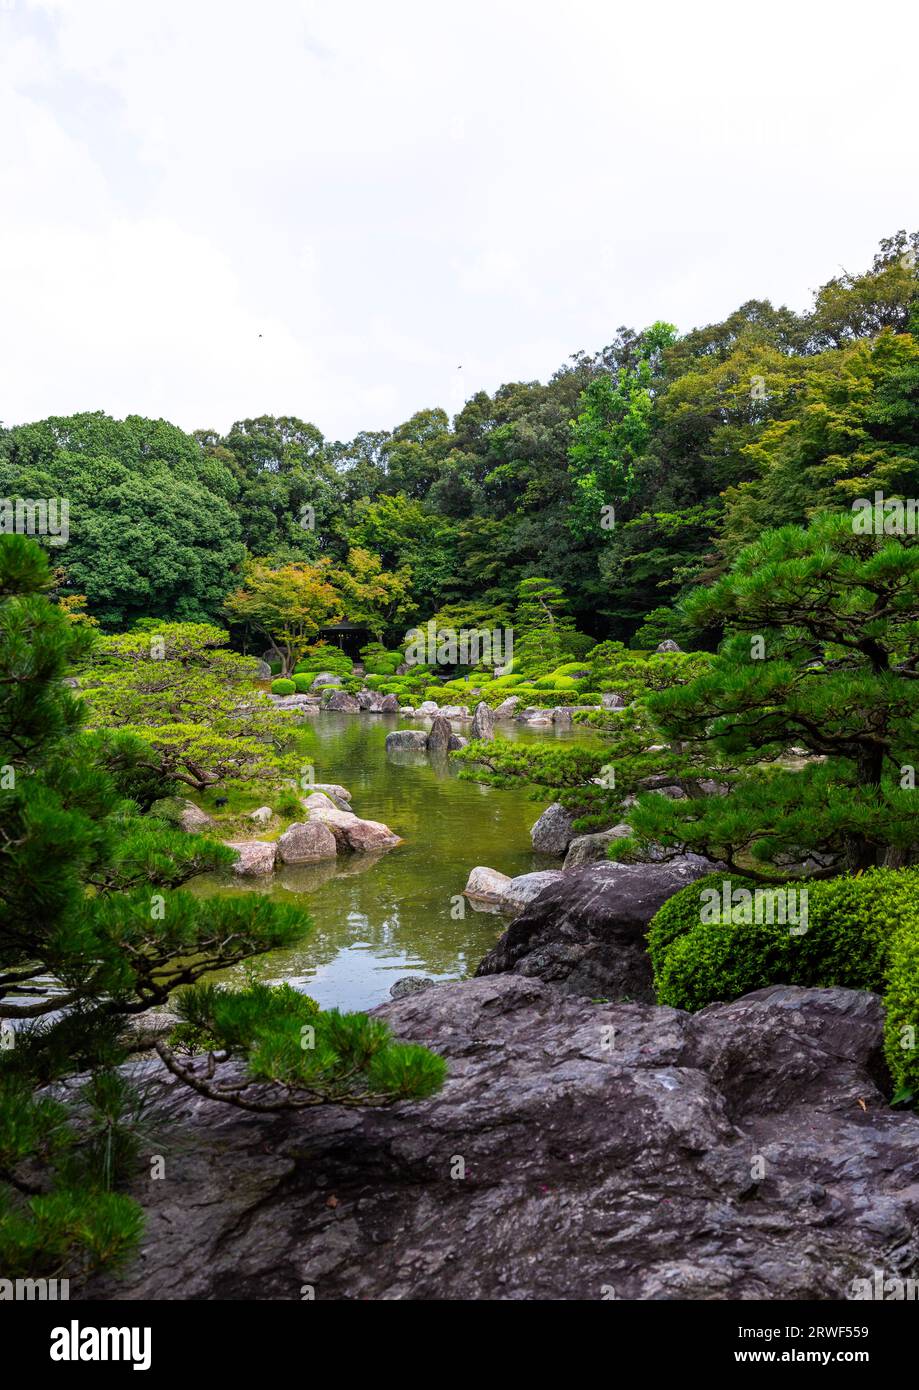 Jardín japonés del parque Ohori, región de Kyushu, Fukuoka, Japón Foto de stock